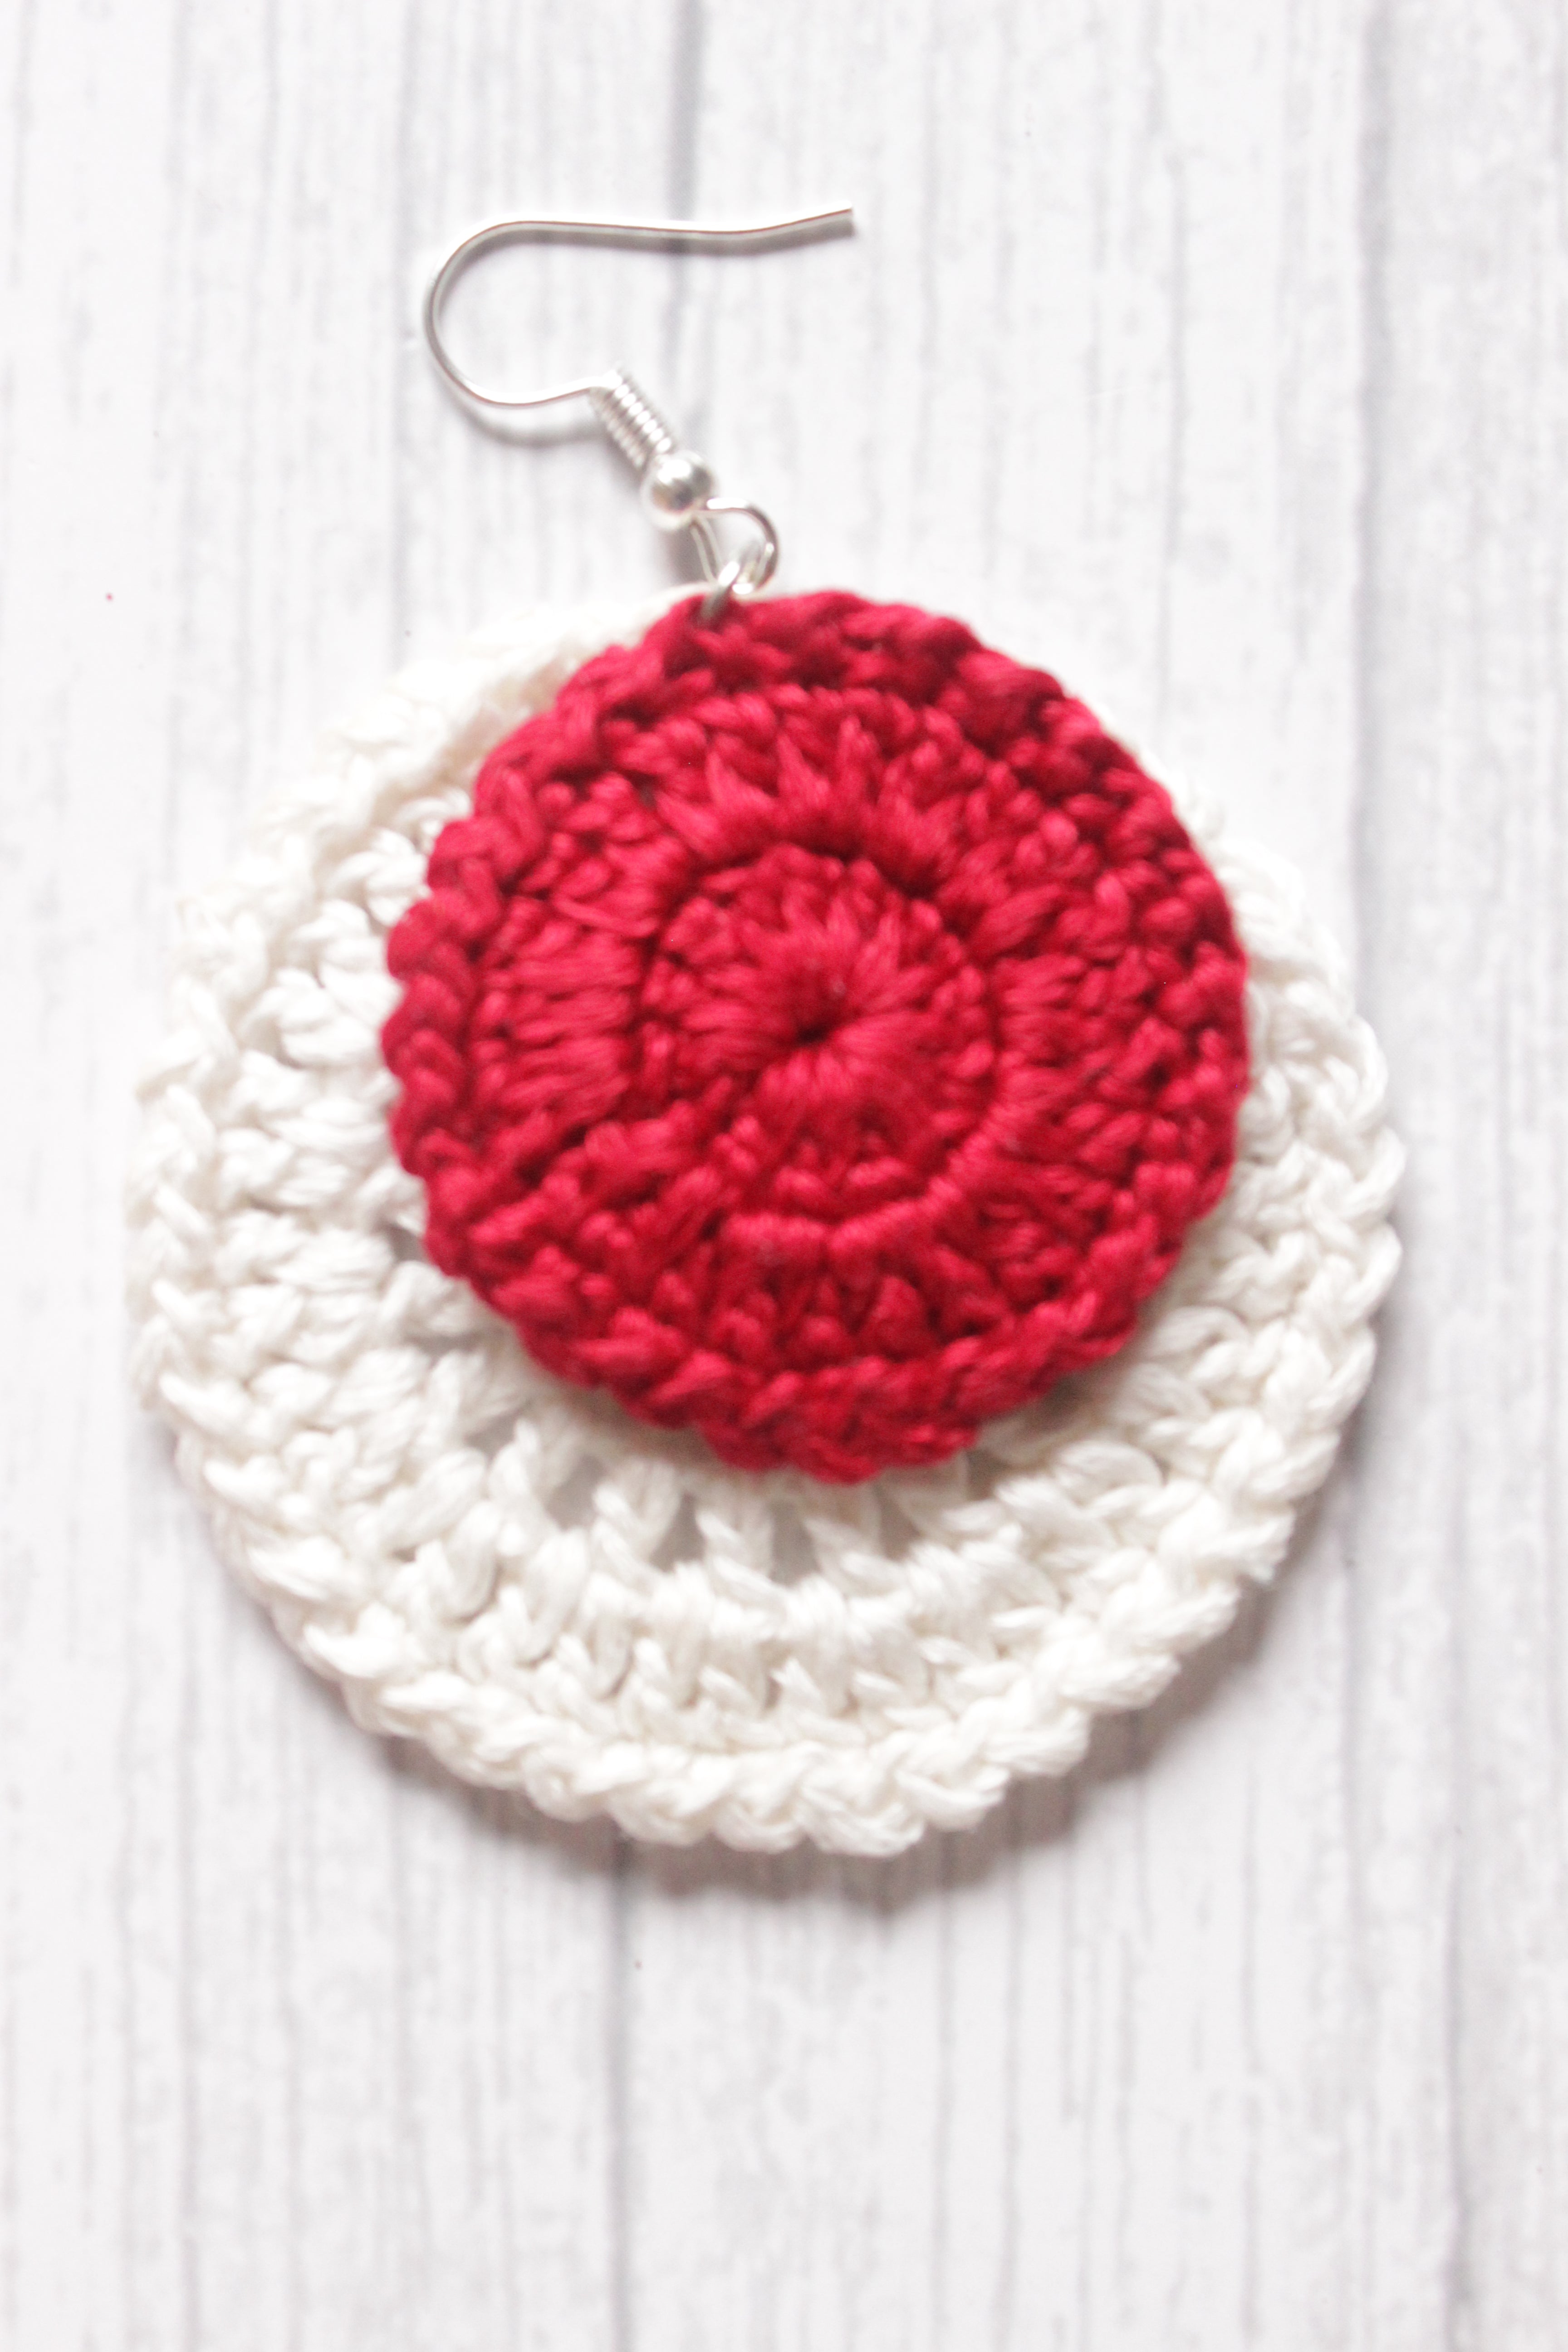 Red & White Circular Crochet Hand Knitted Dangler Earrings